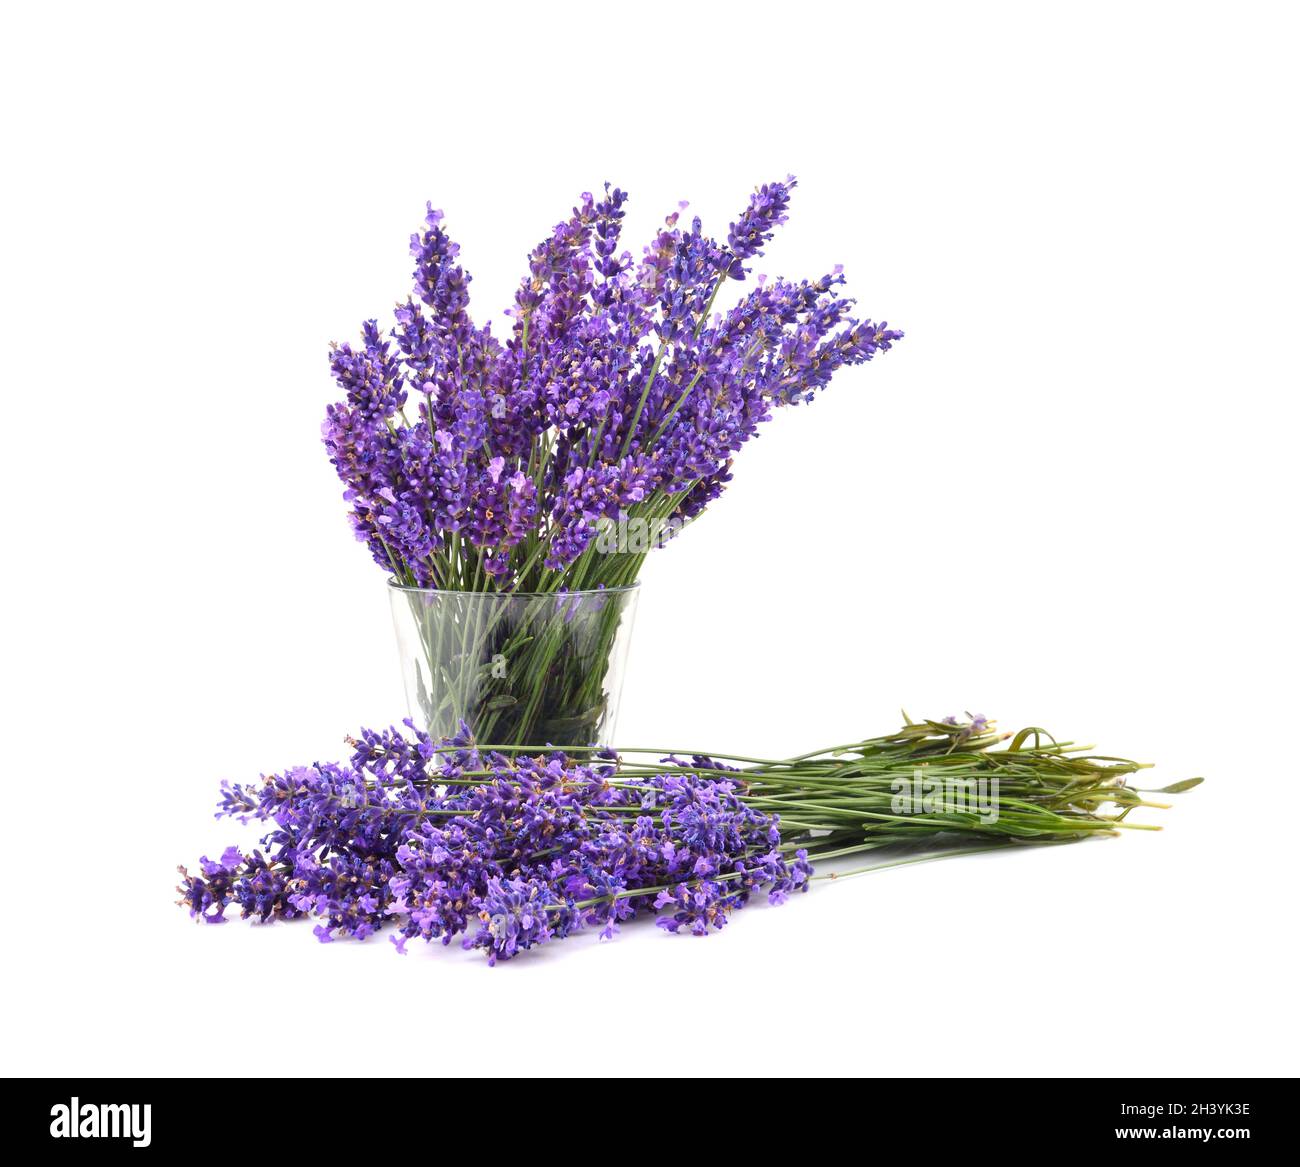 Magnifique bouquet de lavande violette Photo Stock - Alamy